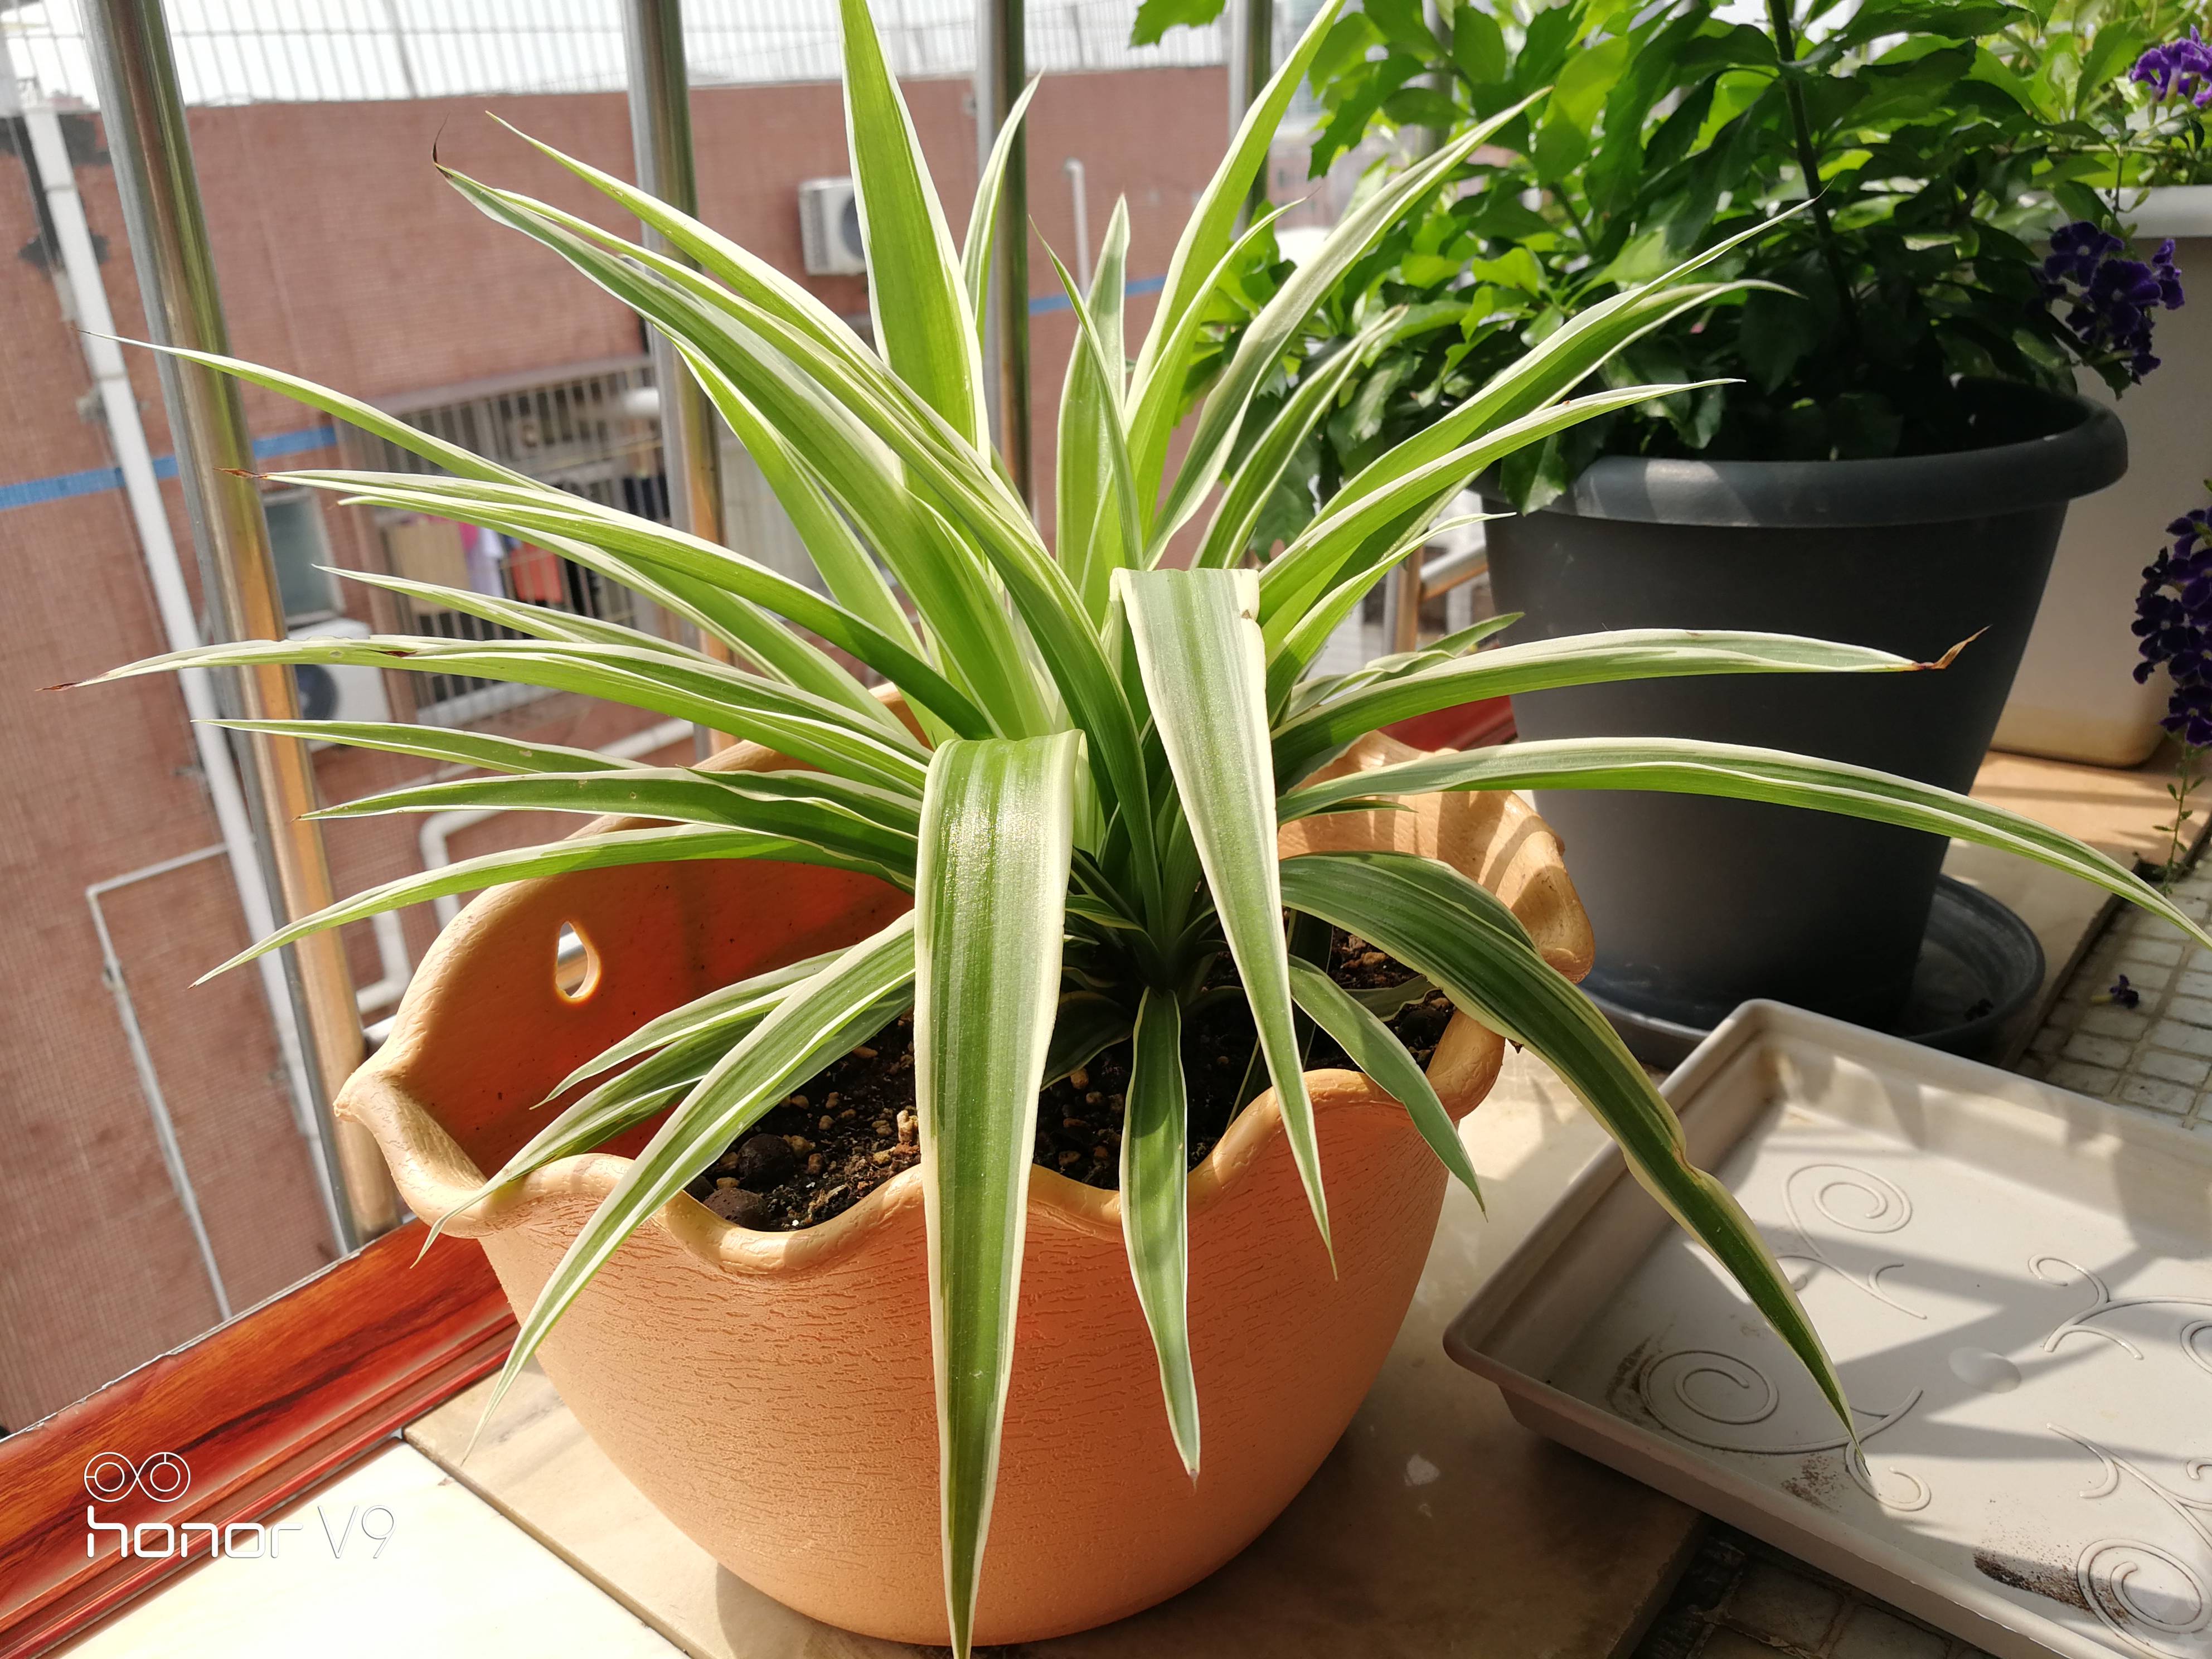 吊兰——居家必养的美观植物